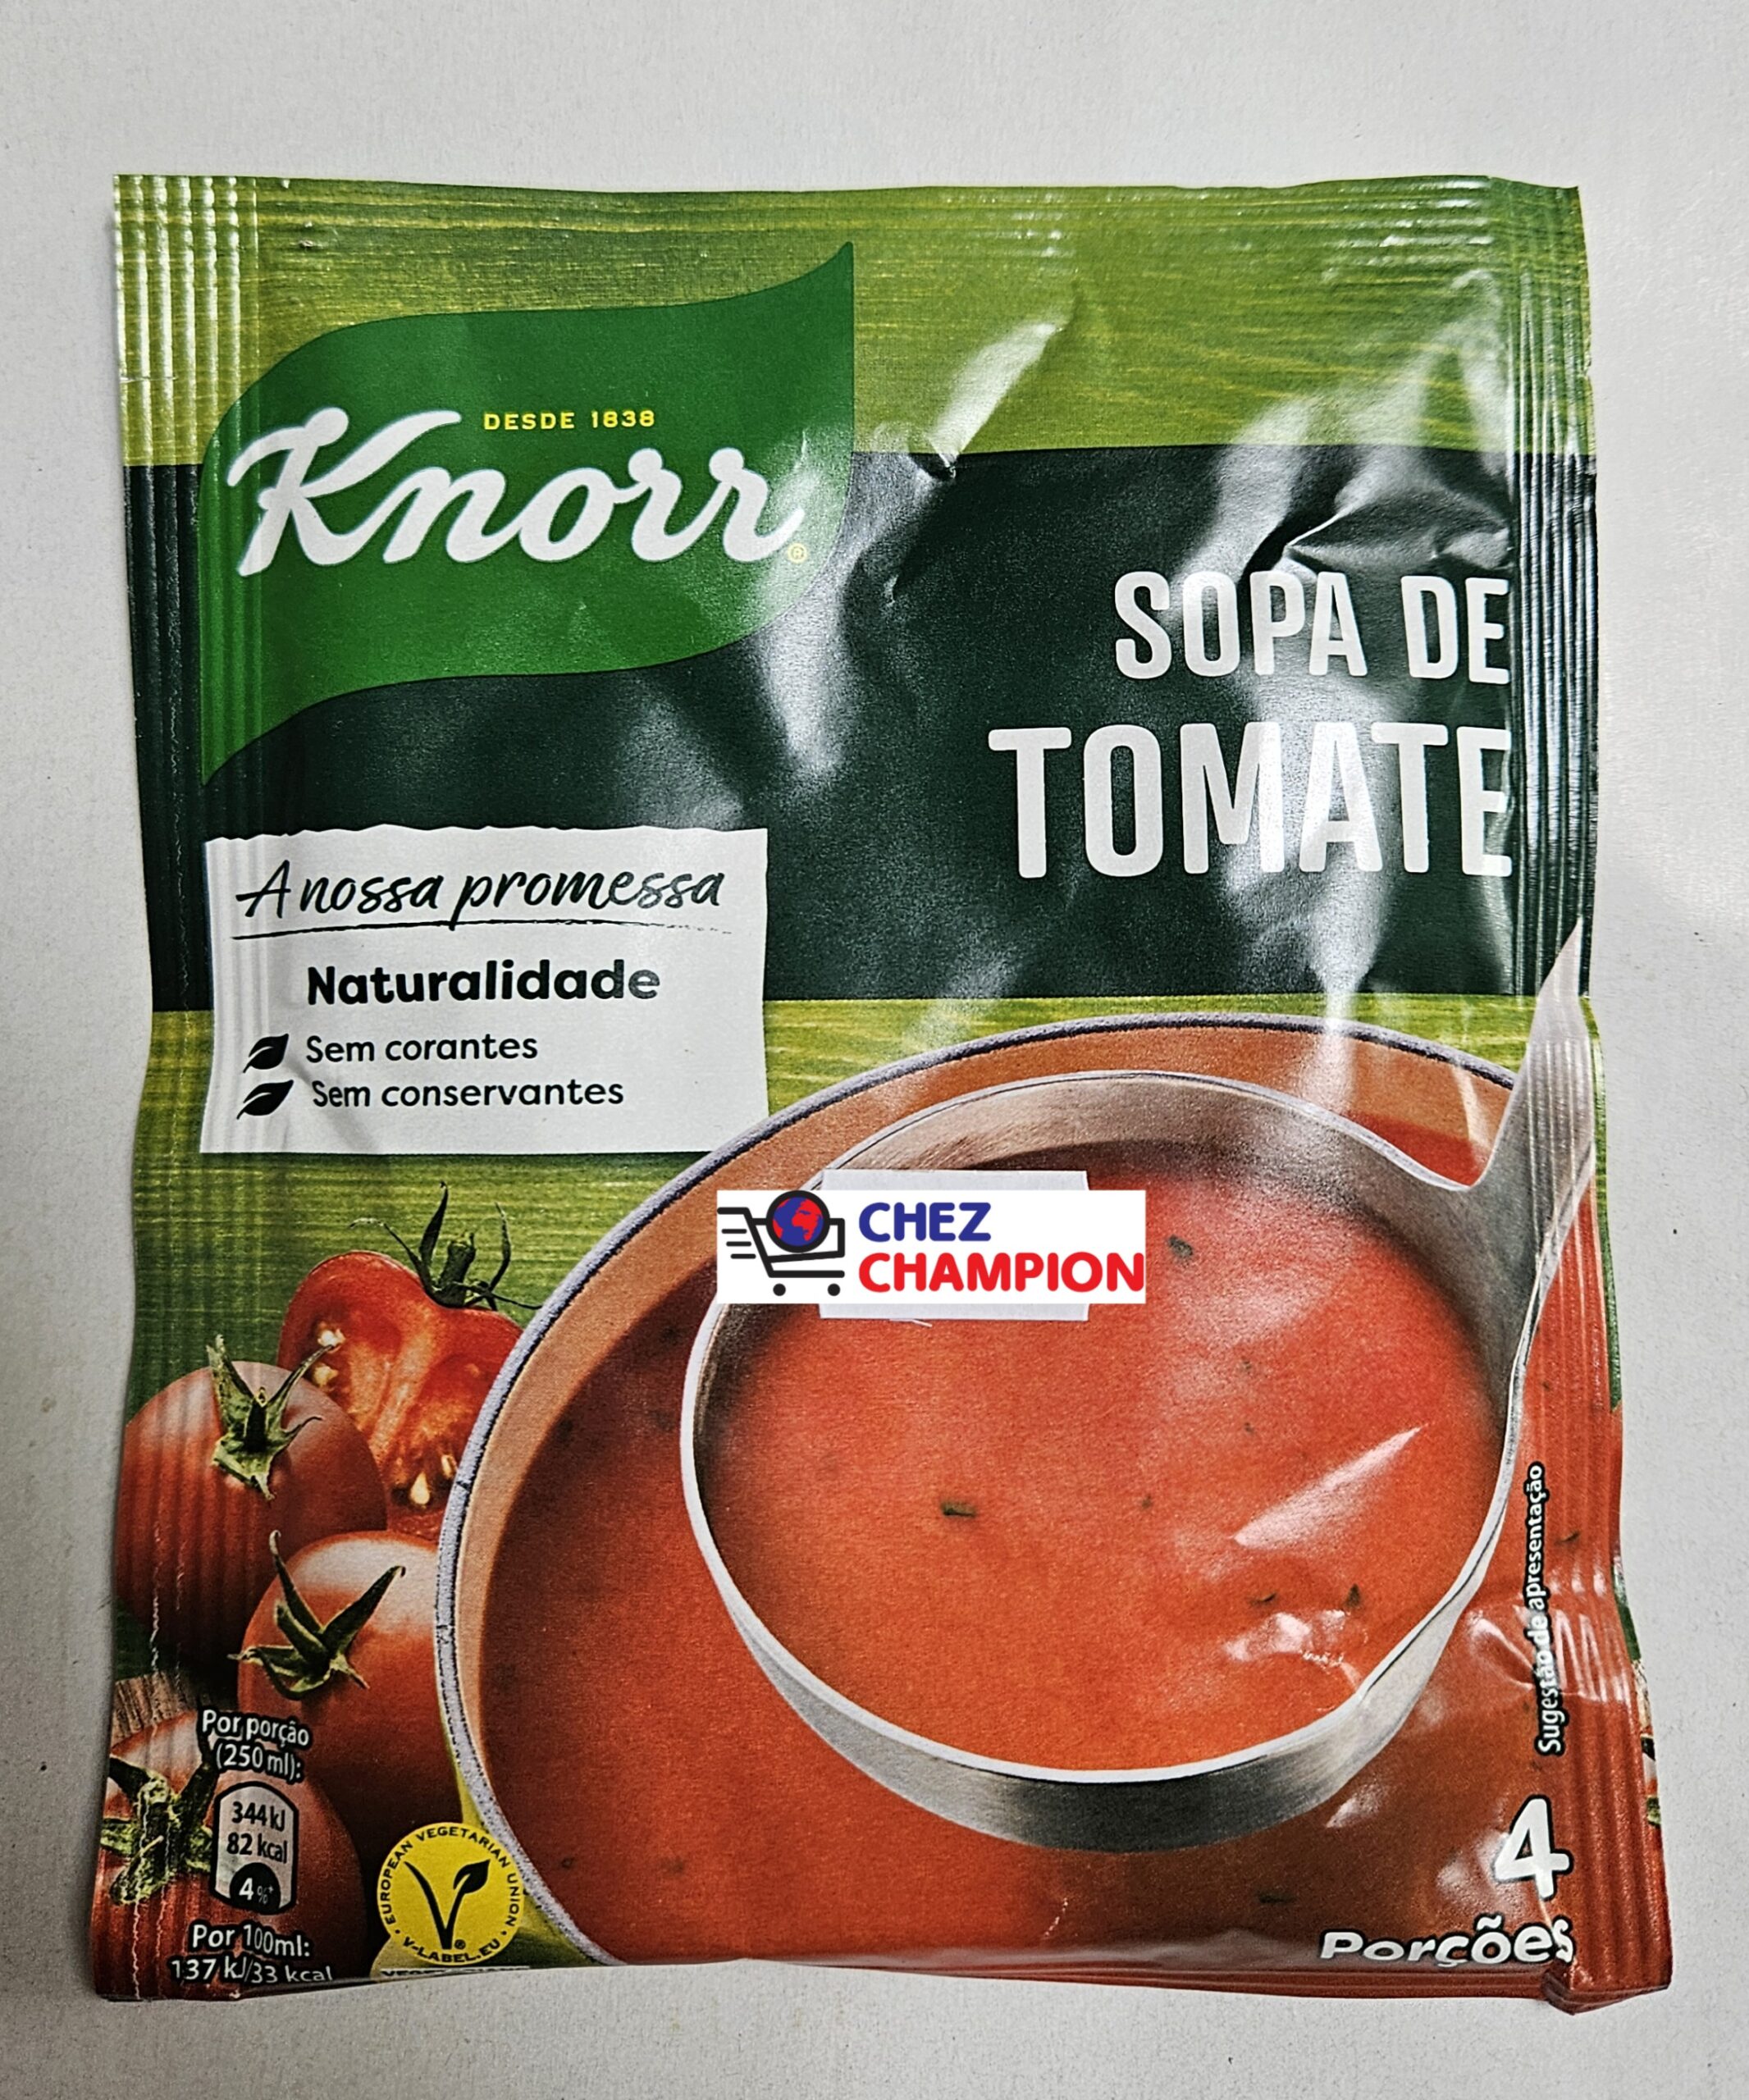 Knorr sopa de tomate – soupe de tomate – 85g